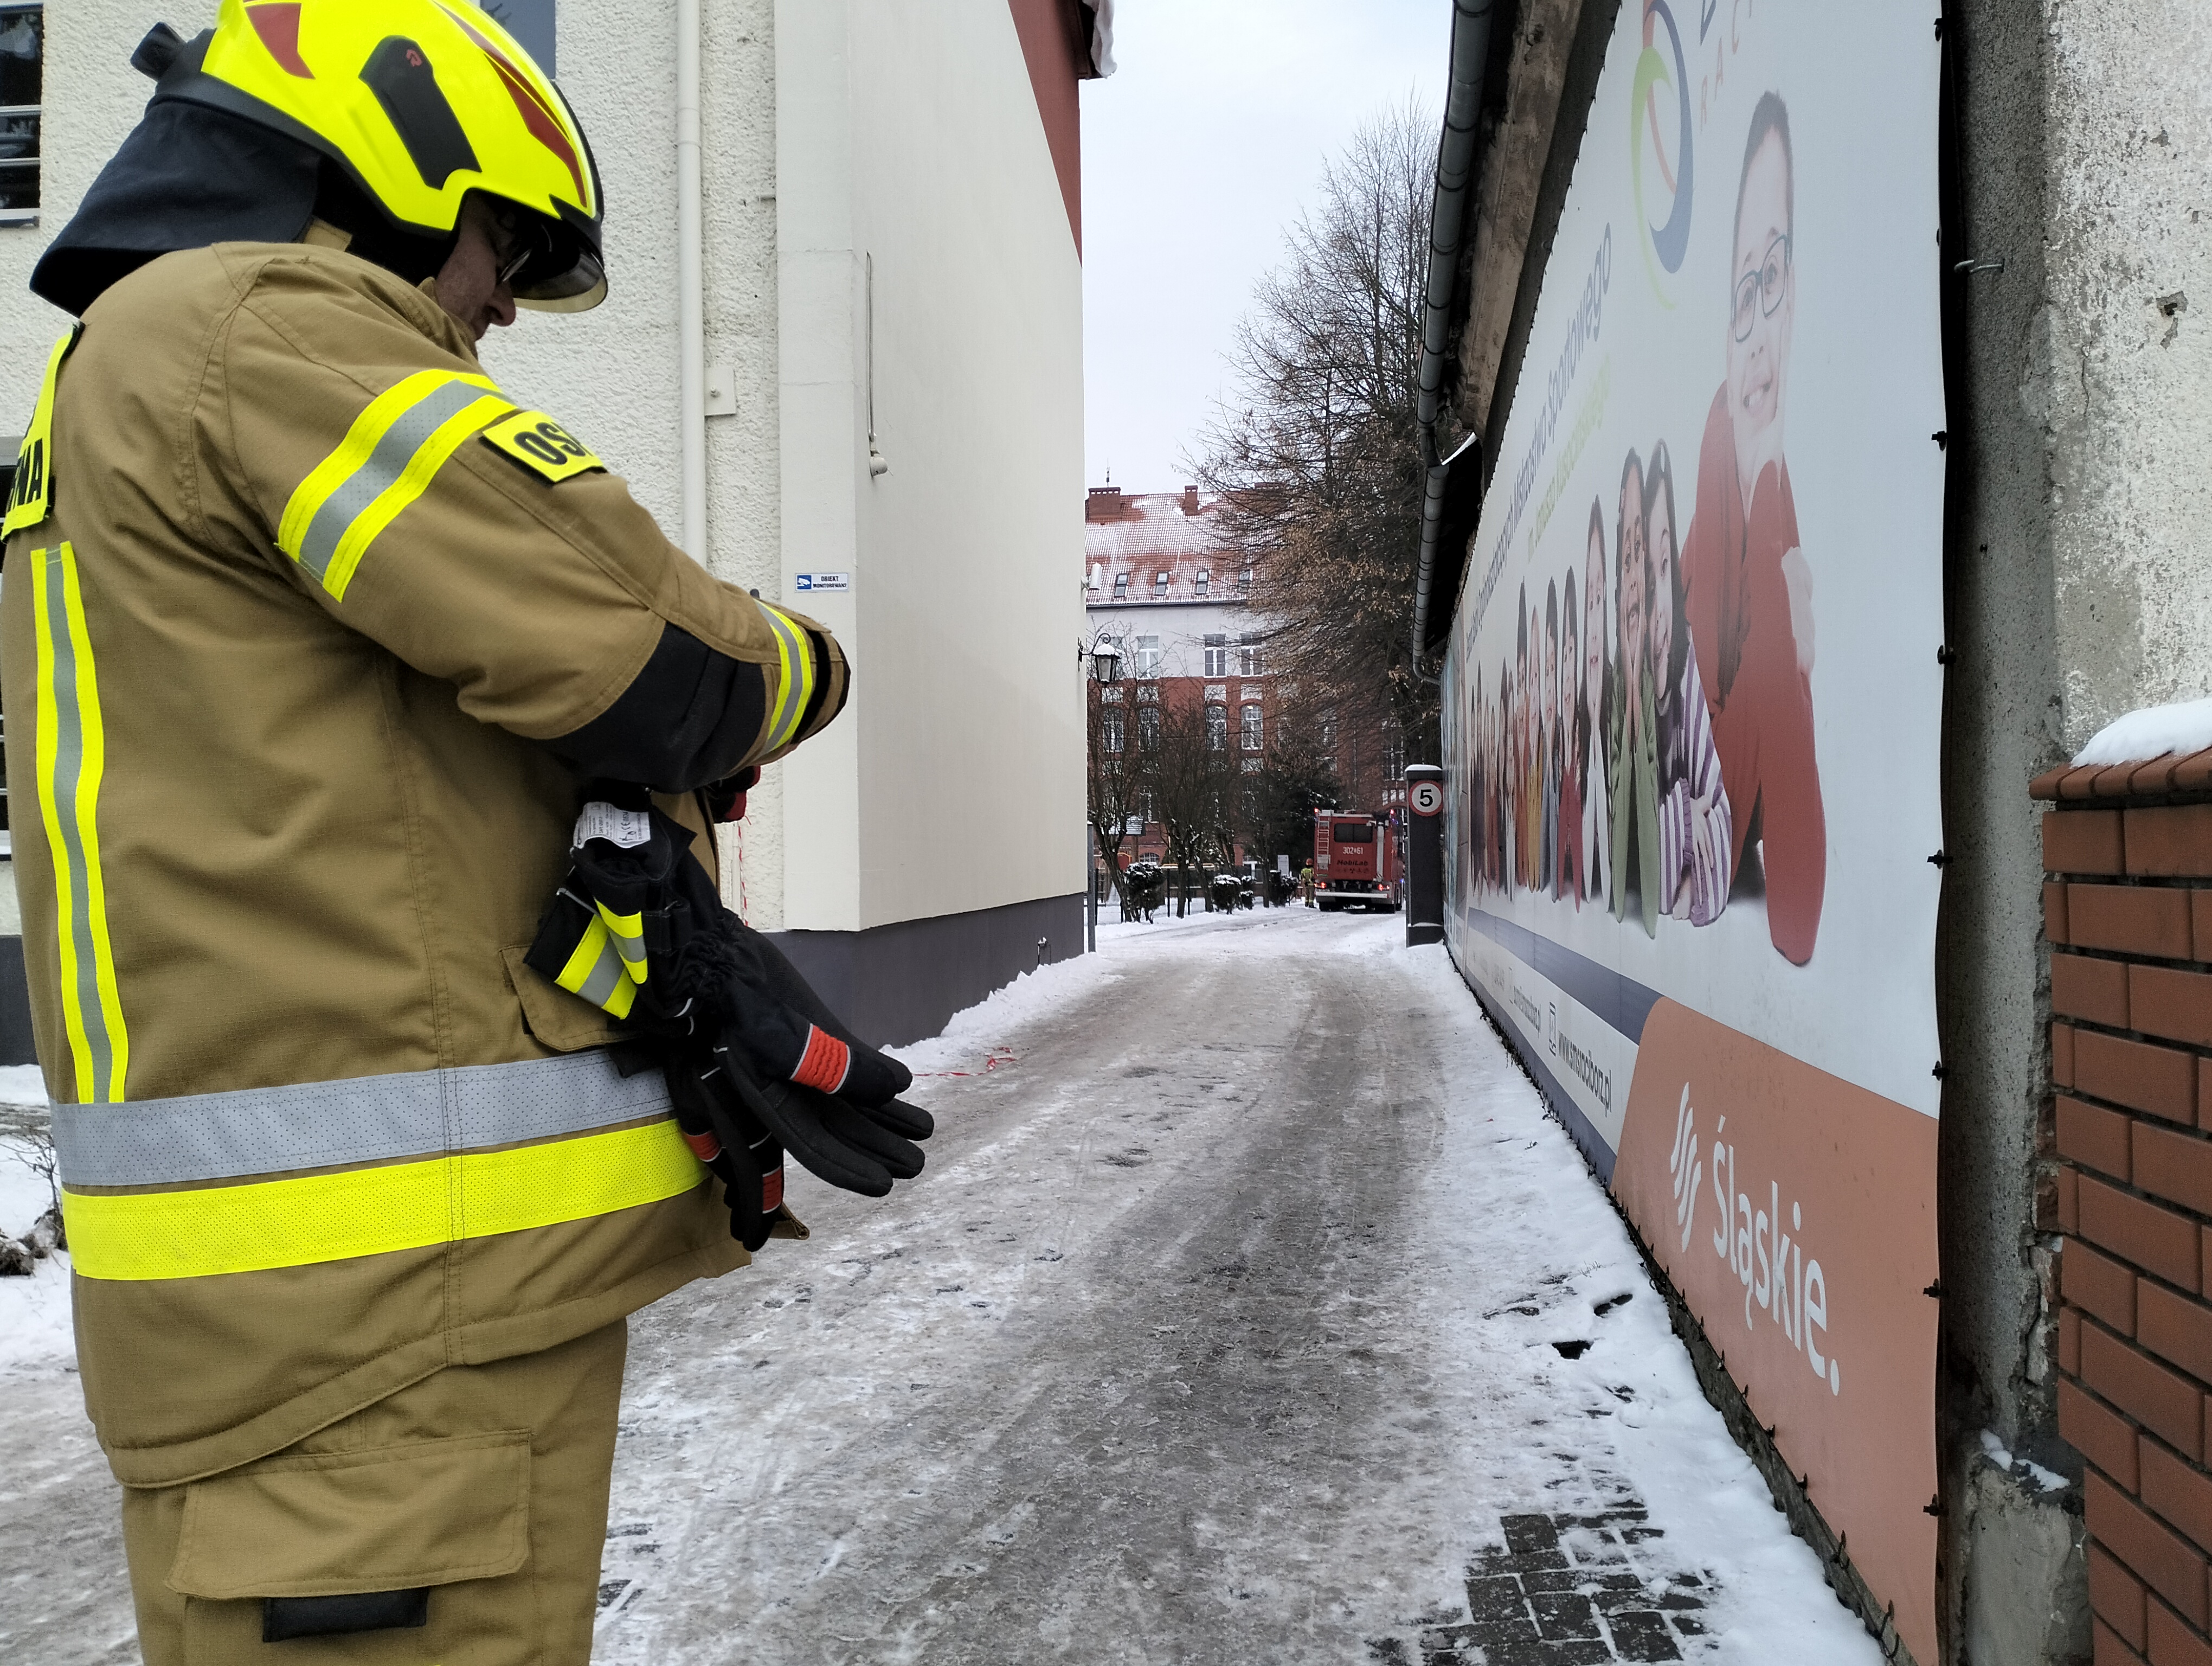 Wejścia na teren szkoły pilnował strażak z OSP, dostęp mieli uczniowie mieszkający w internacie i rodzice